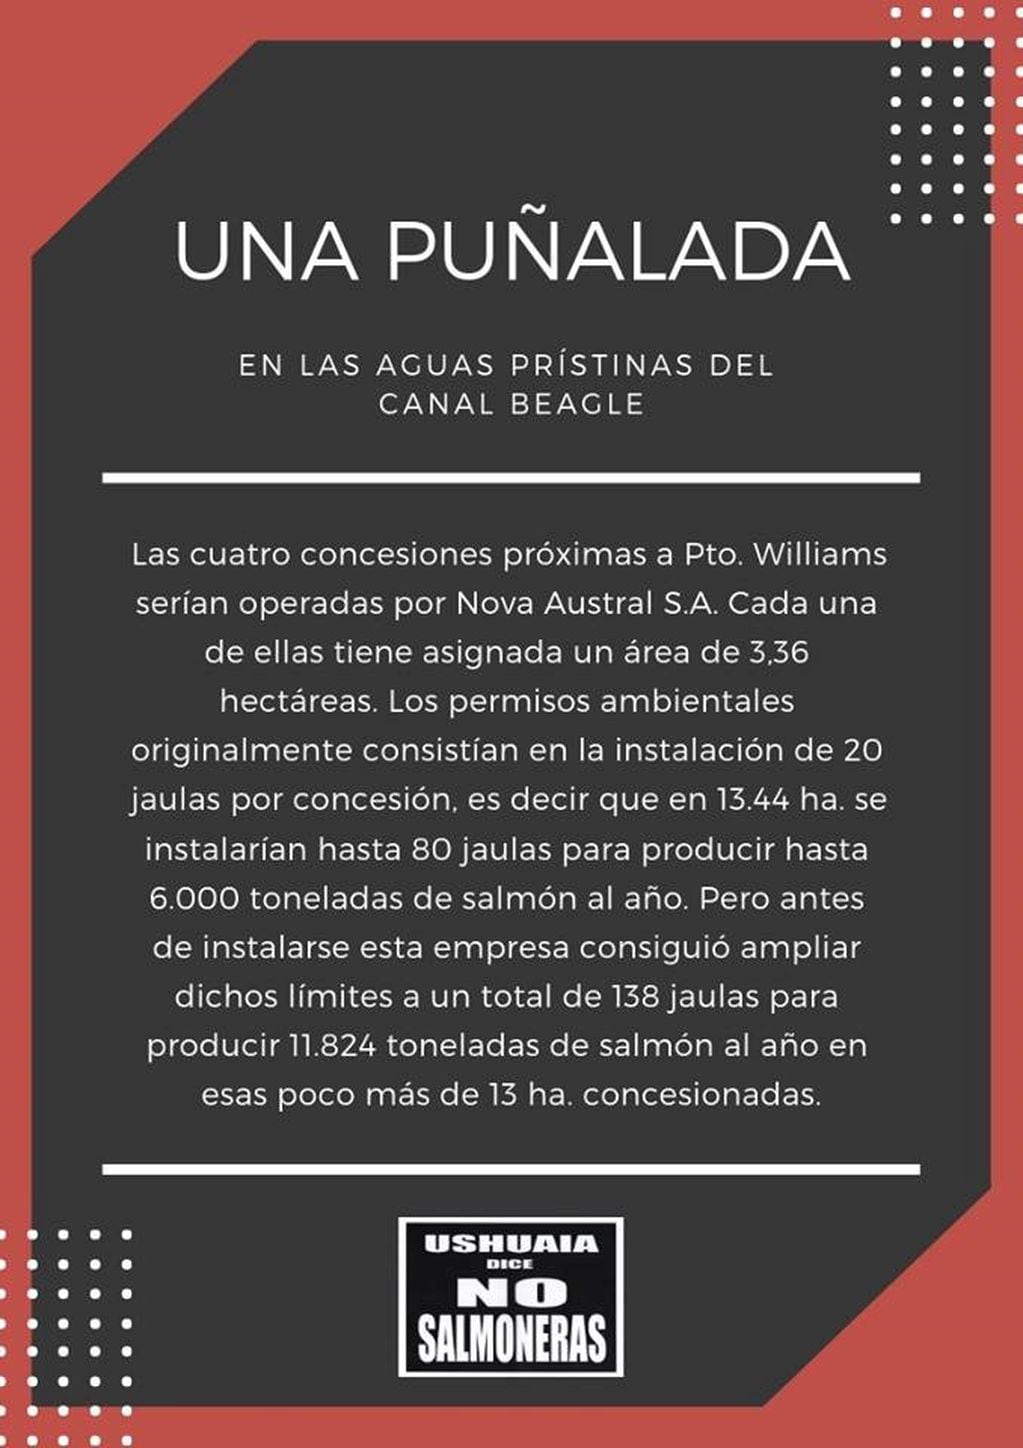 No a las Salmoneras en el Canal de Beagle - Aguas prístinas y ancestrales. Argentina - Chile.